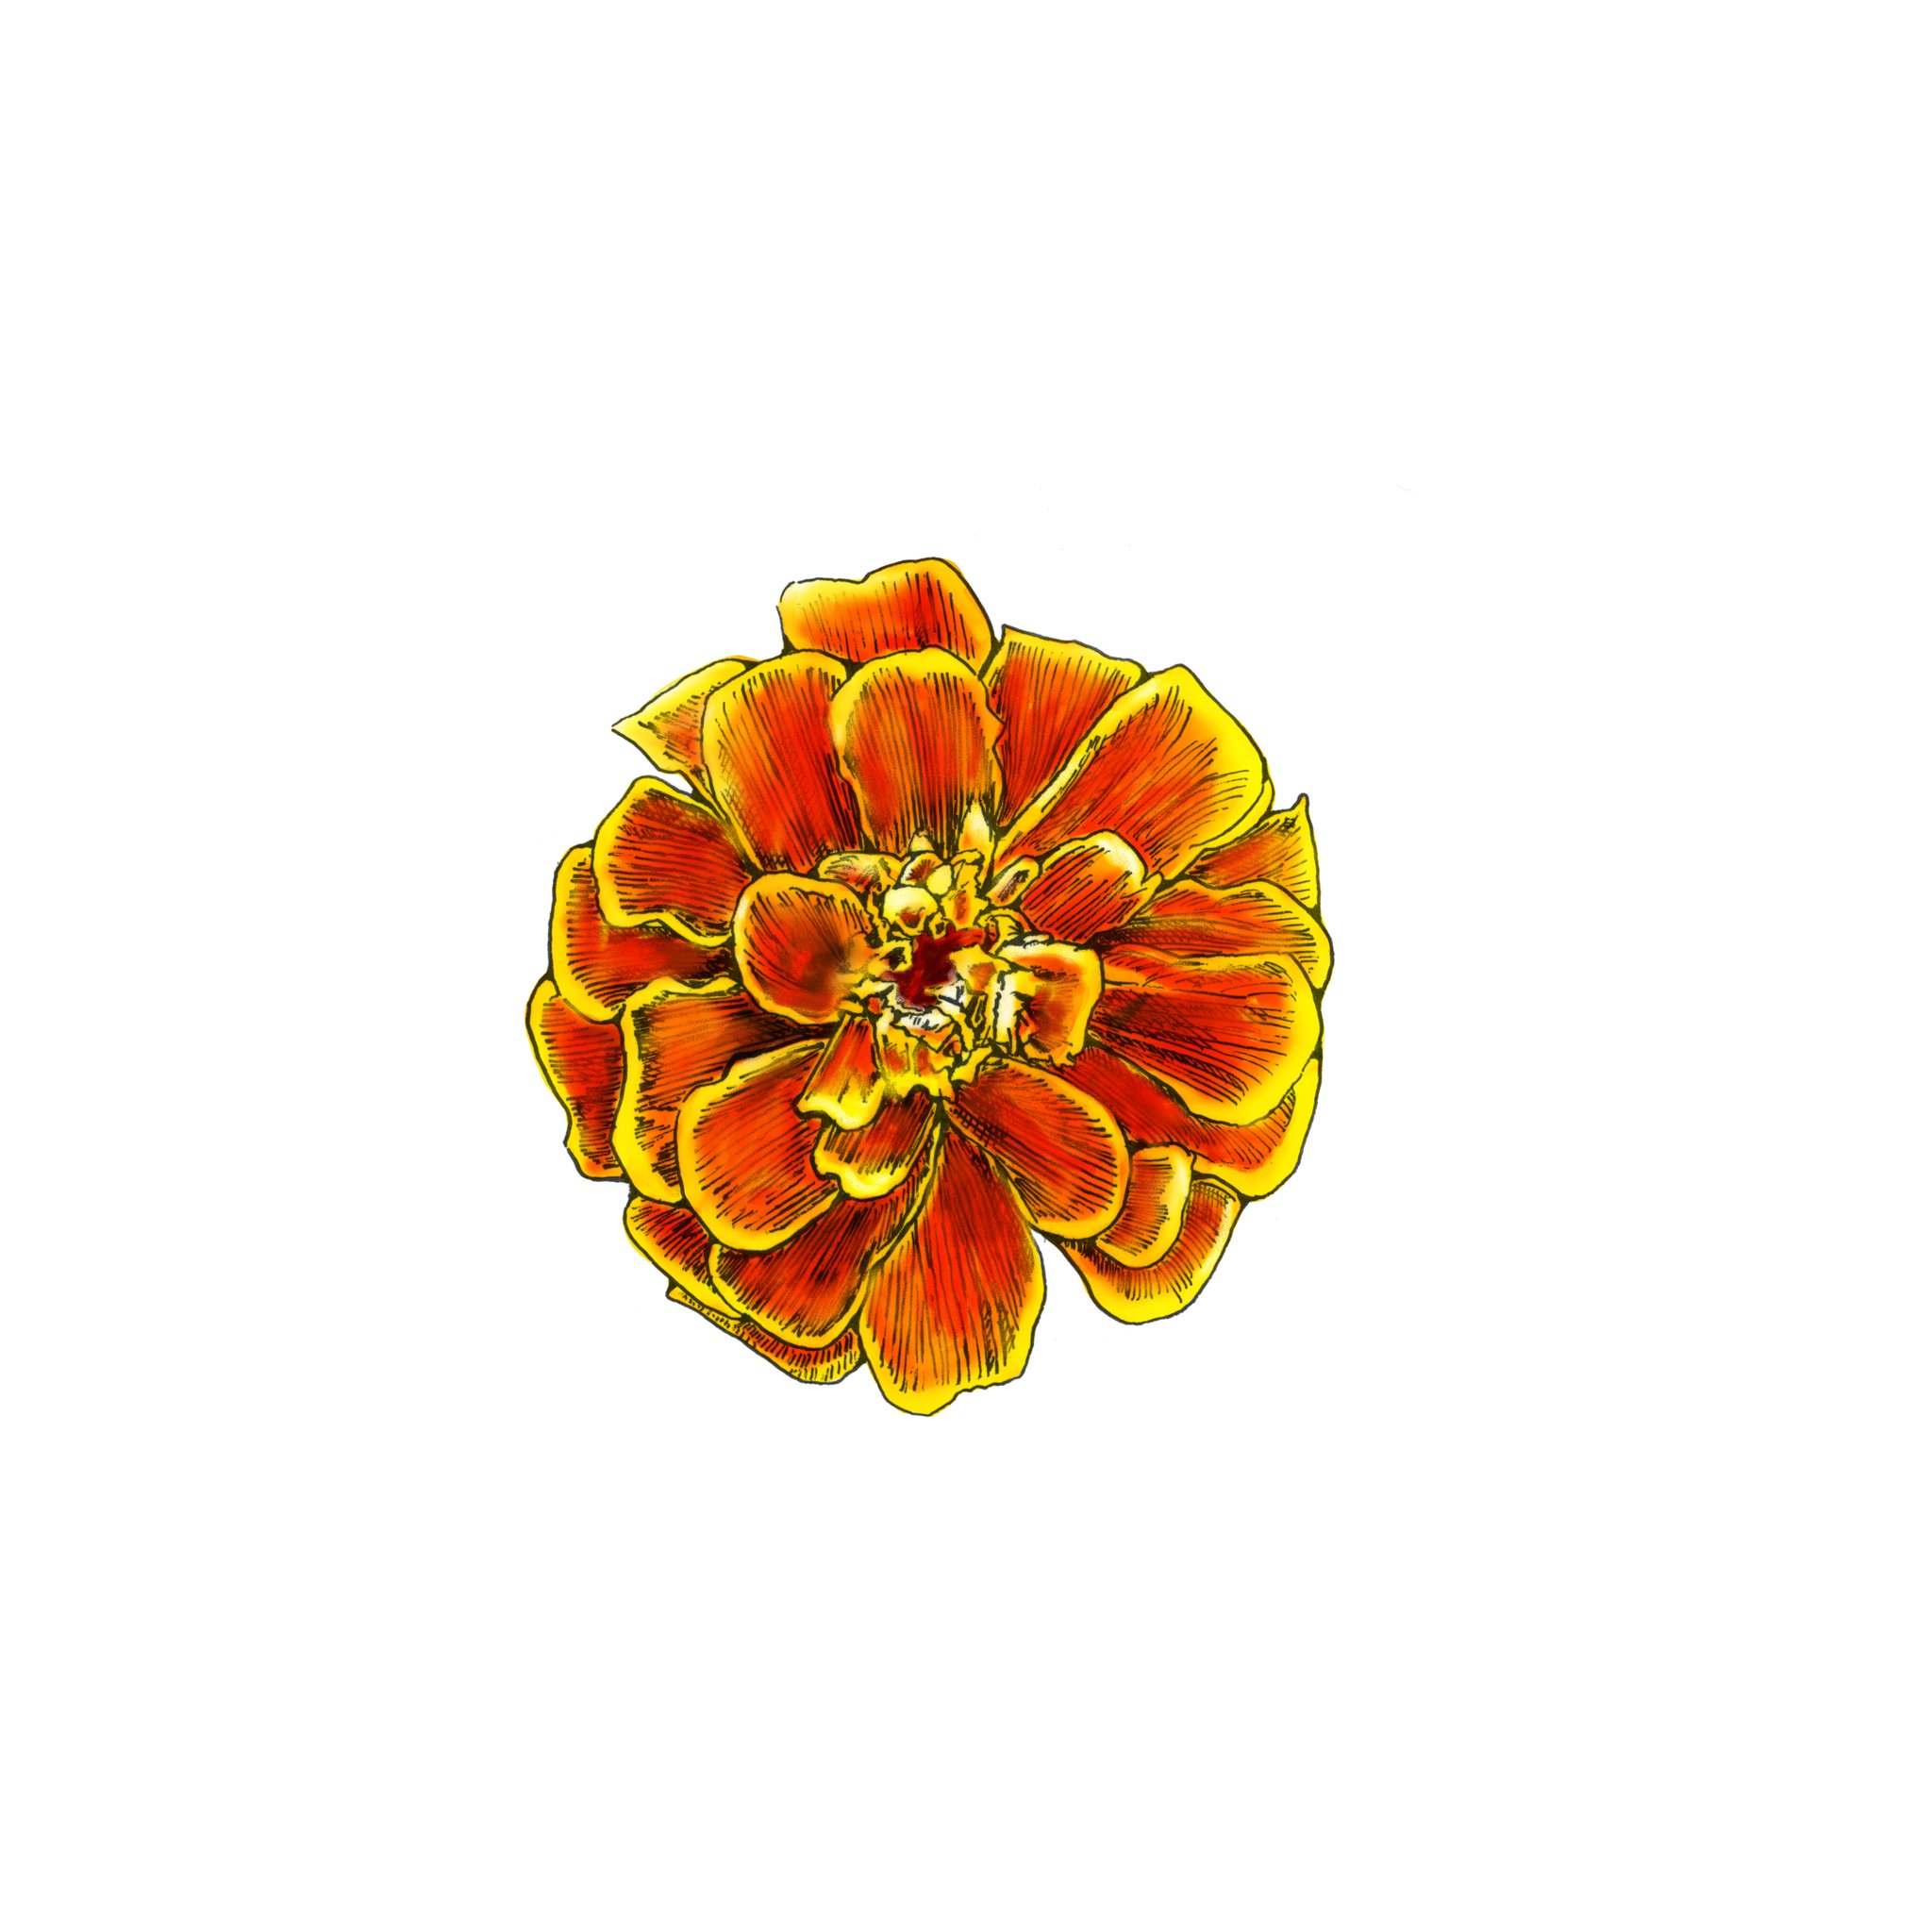 船津光廣 Mitsuhiro Funatsu マリーゴールド 2日に1絵 イラスト 絵 水彩 花 Illustration Digitalart Digital Flowers Marigold T Co Udfcdrigkd Twitter